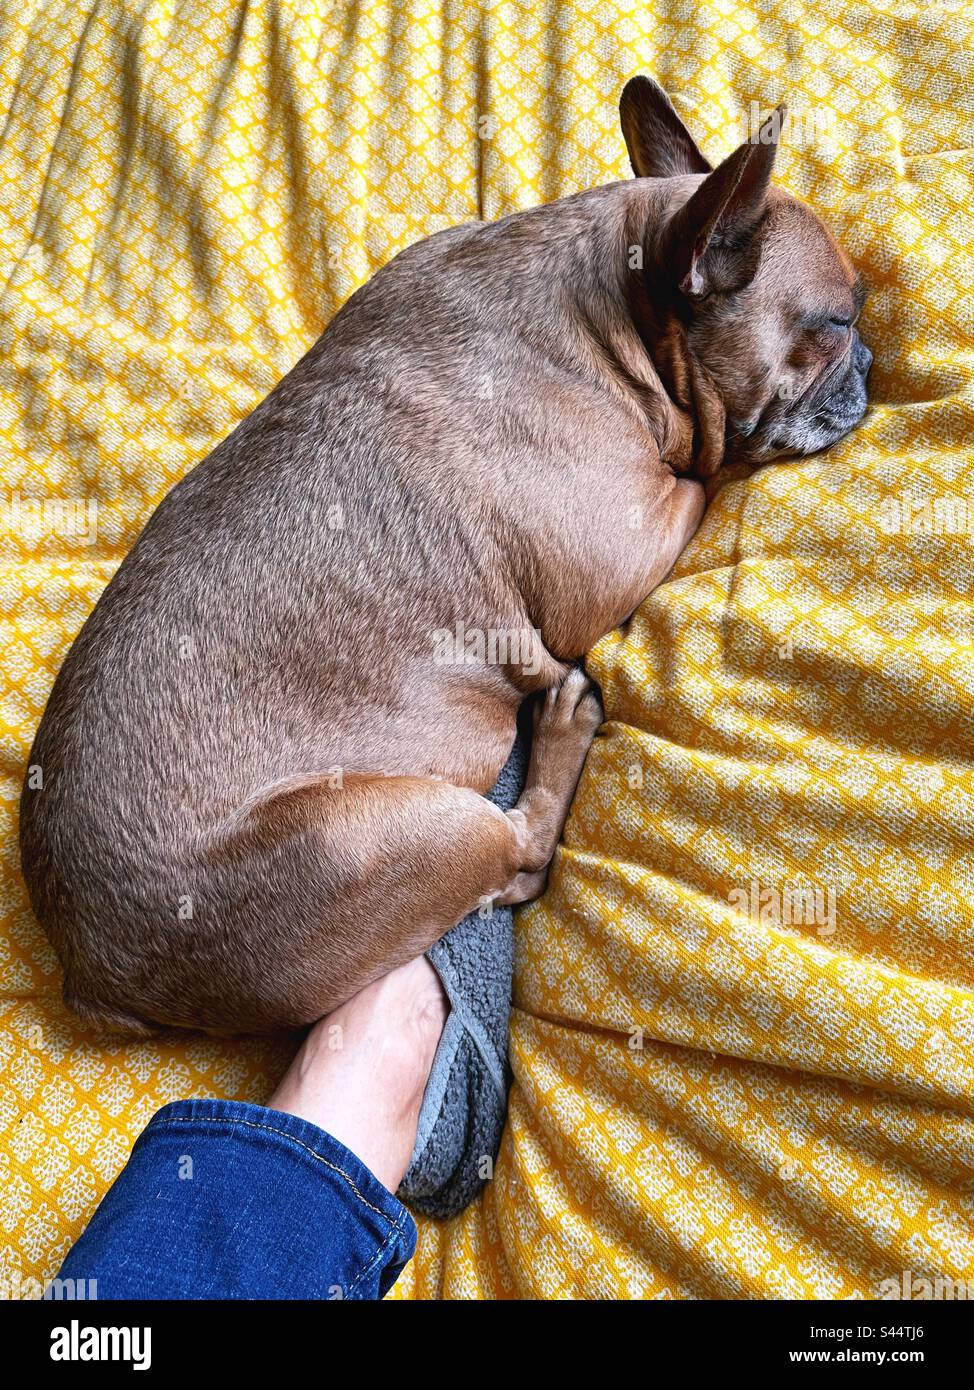 Eine süße, schlafende, französische Bulldogge, die auf dem Fuß einer Person liegt. Stockfoto